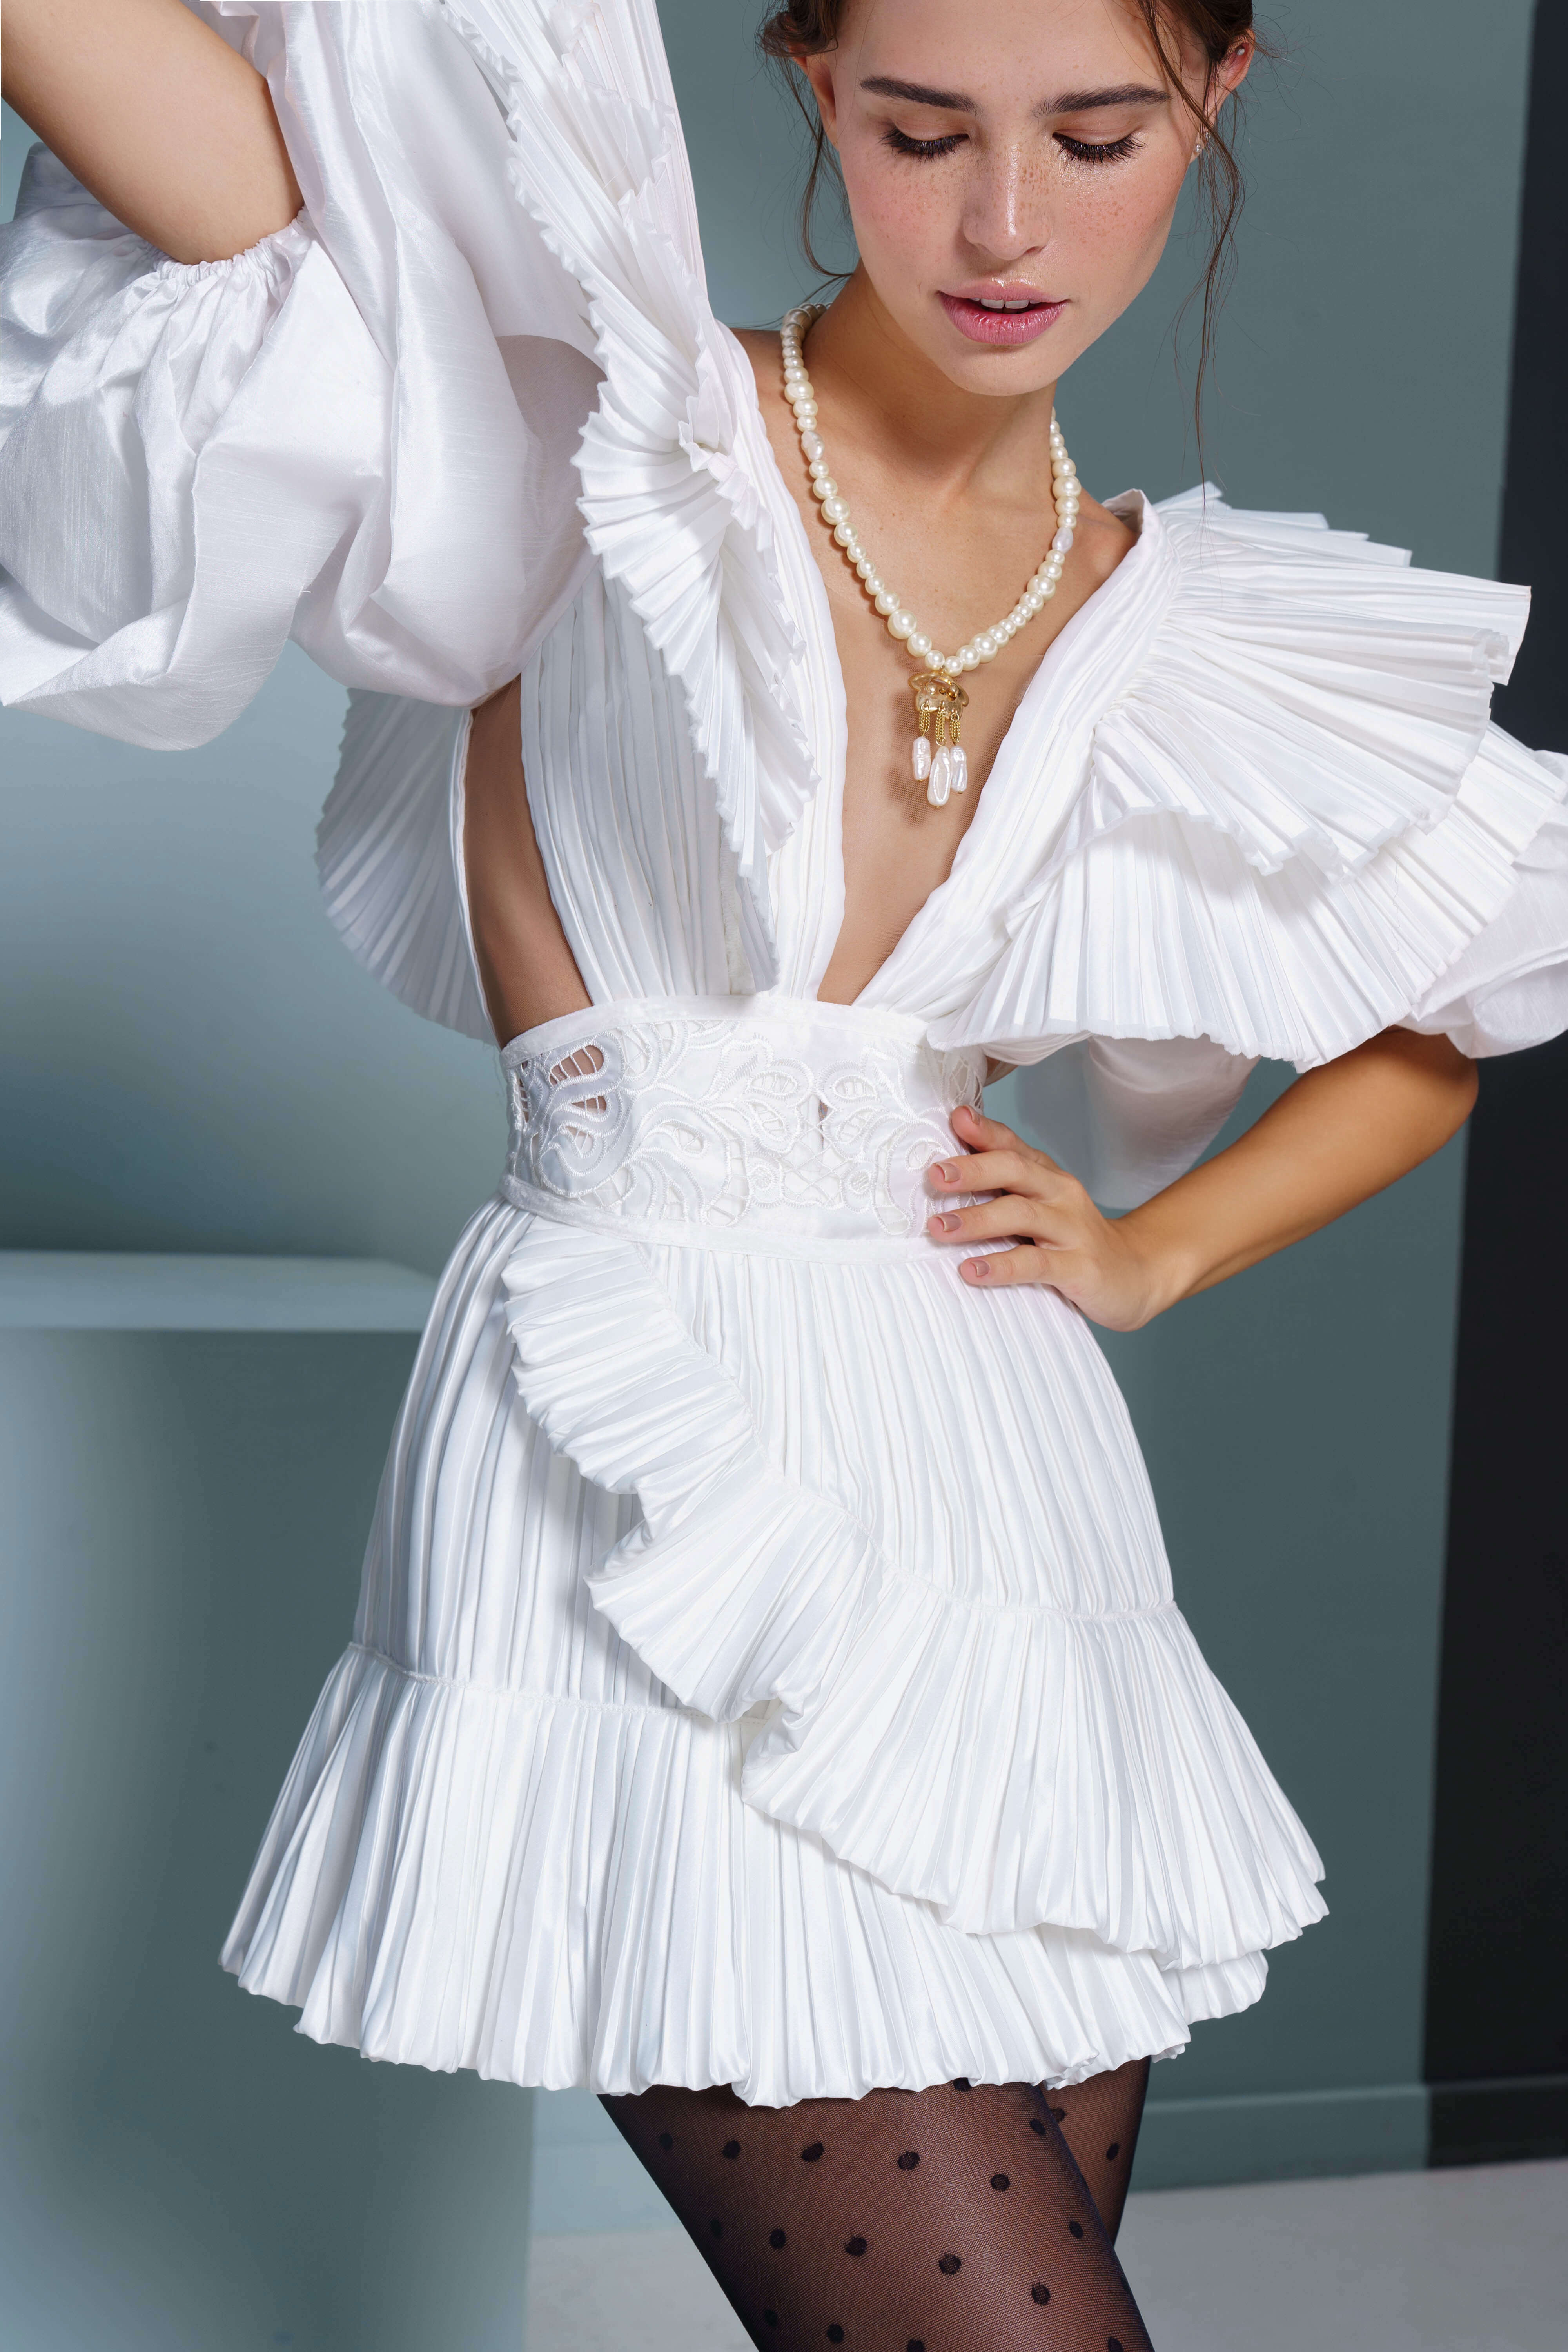 Купить свадебное платье «Зефир» Рара Авис из коллекции Аморе Мио 2022 года в салоне «Мэри Трюфель»